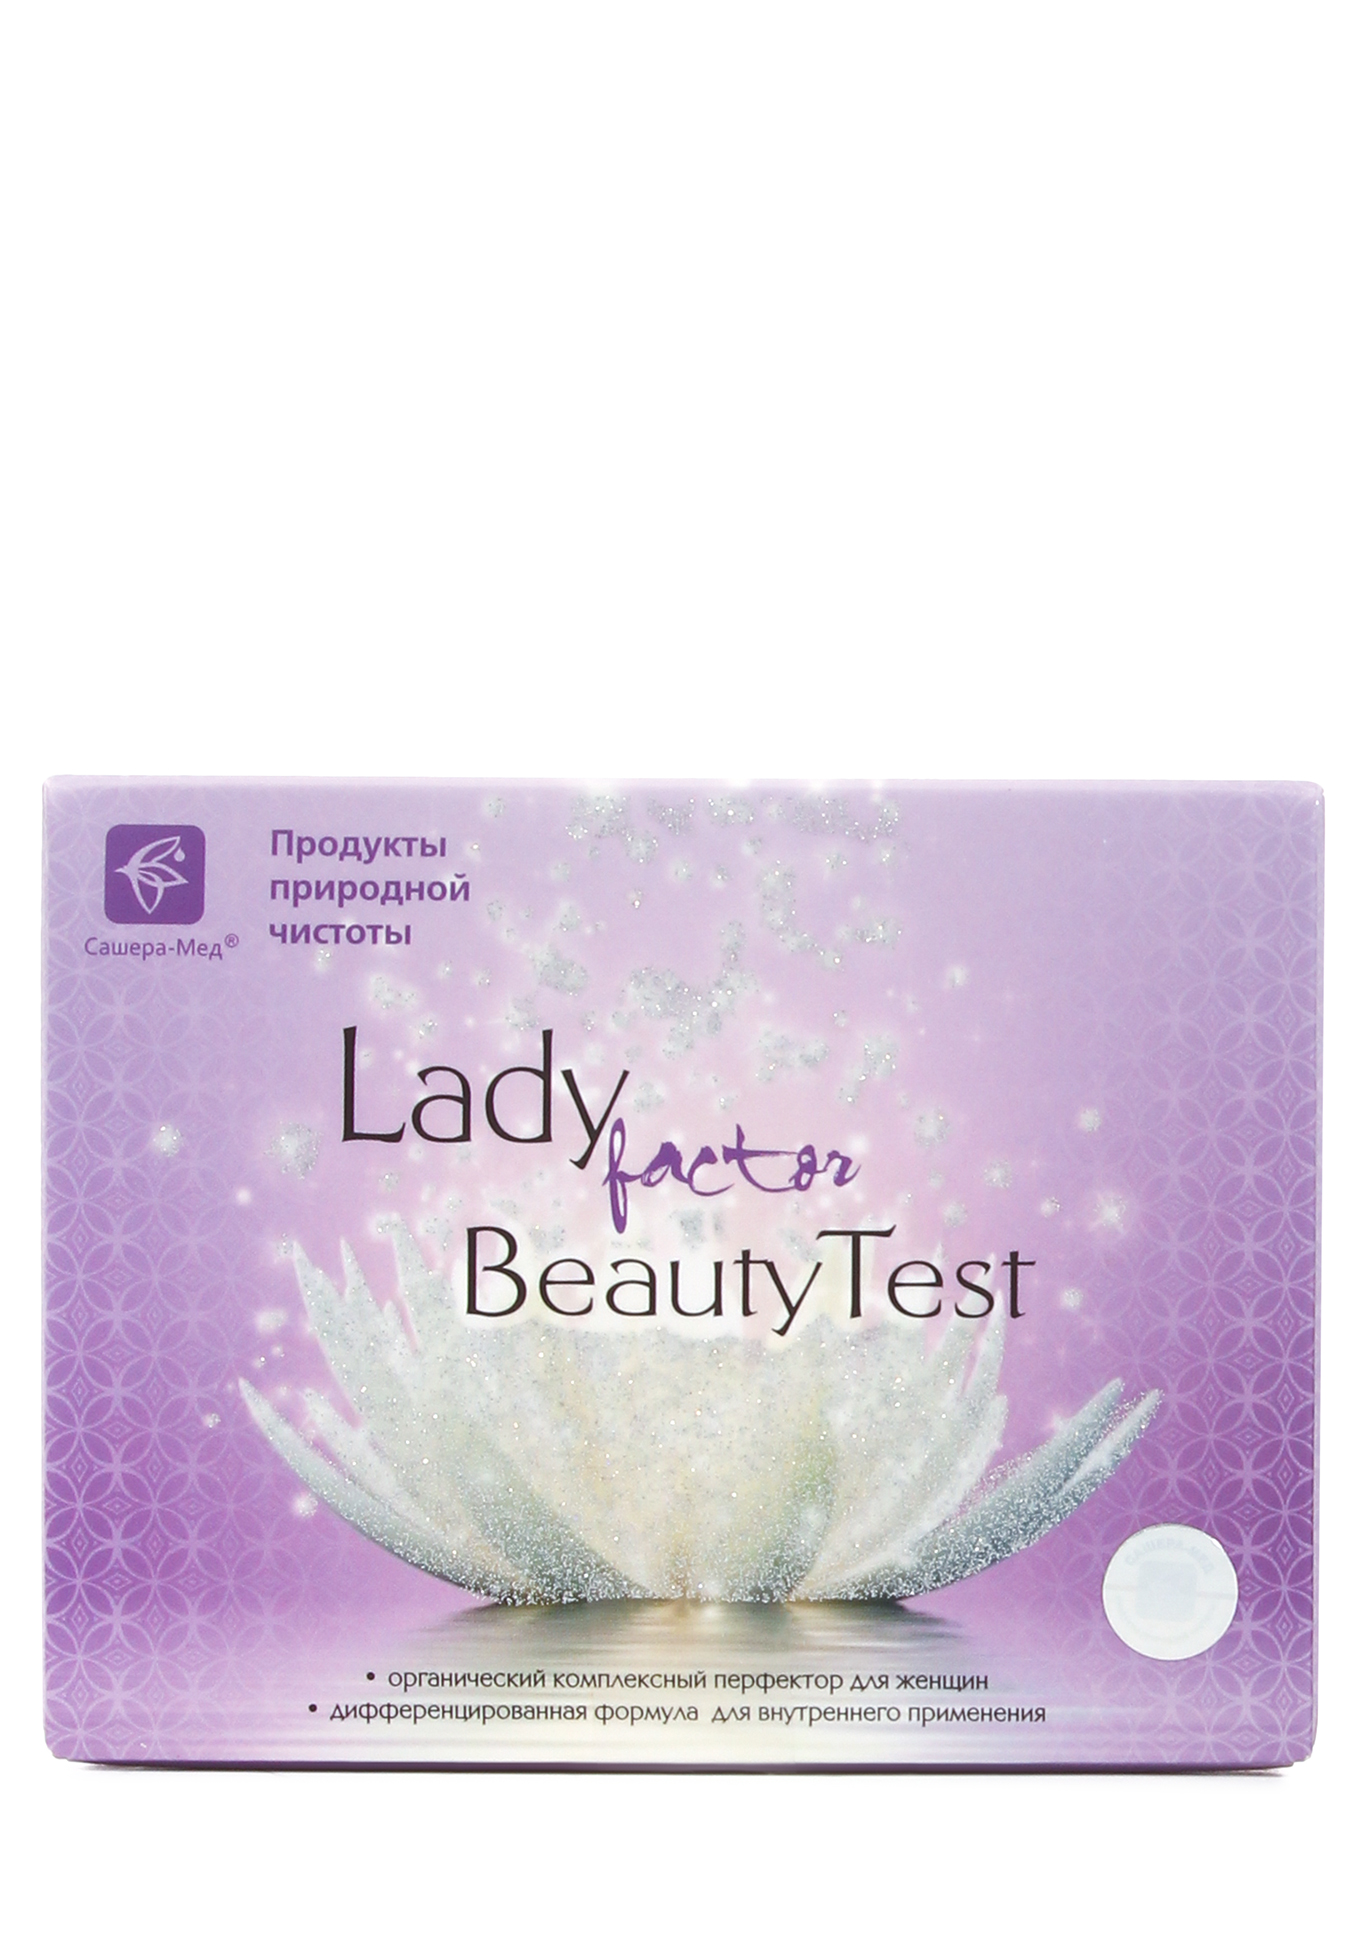 Комплекс LadyFactor BeautyTest Сашера-Мед - фото 2